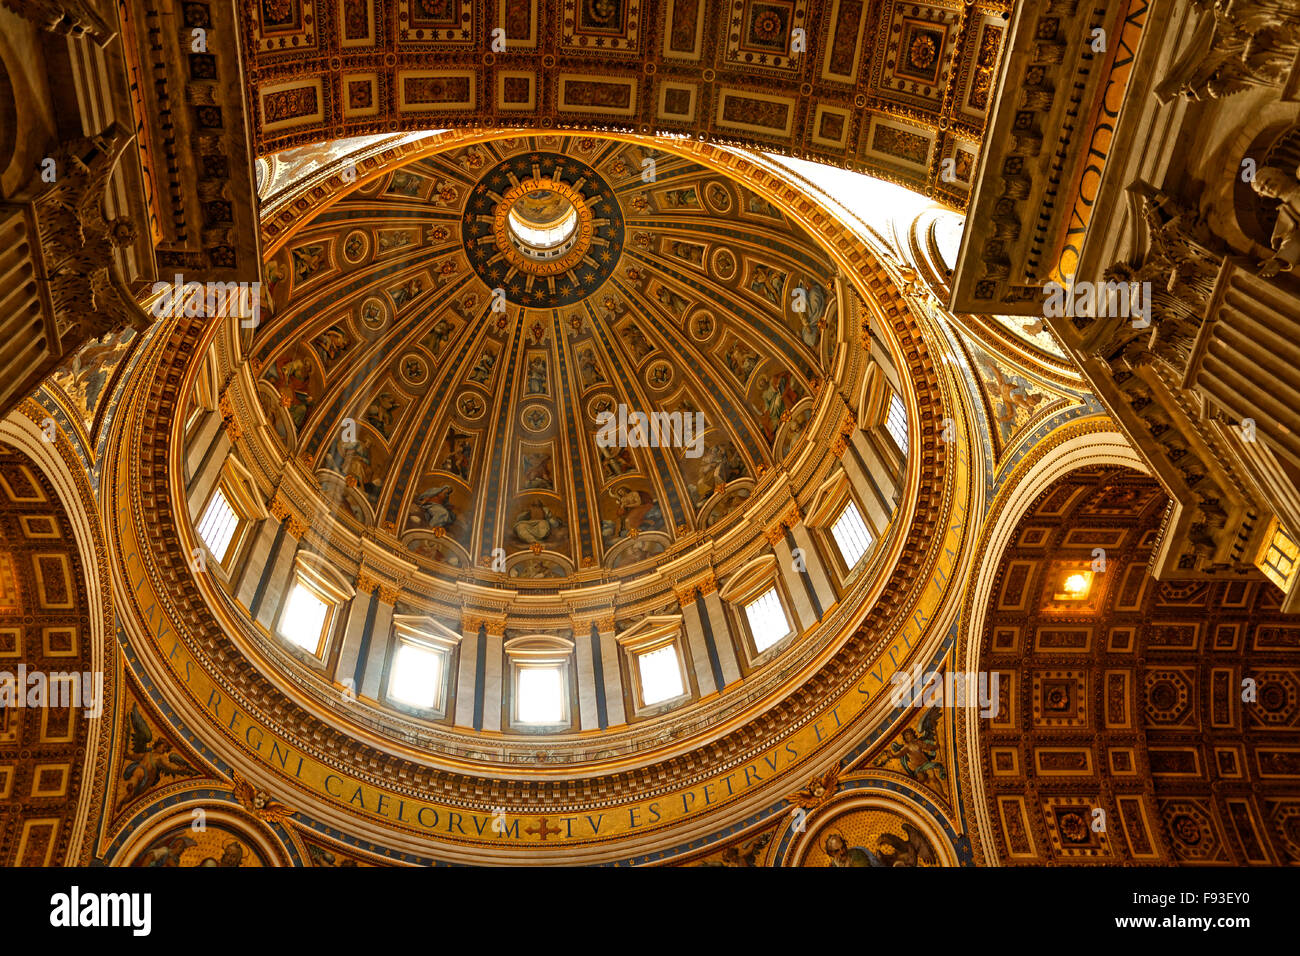 Der Vatikan Kuppel von innen, ein gutes Beispiel der klassischen Architektur Stockfoto